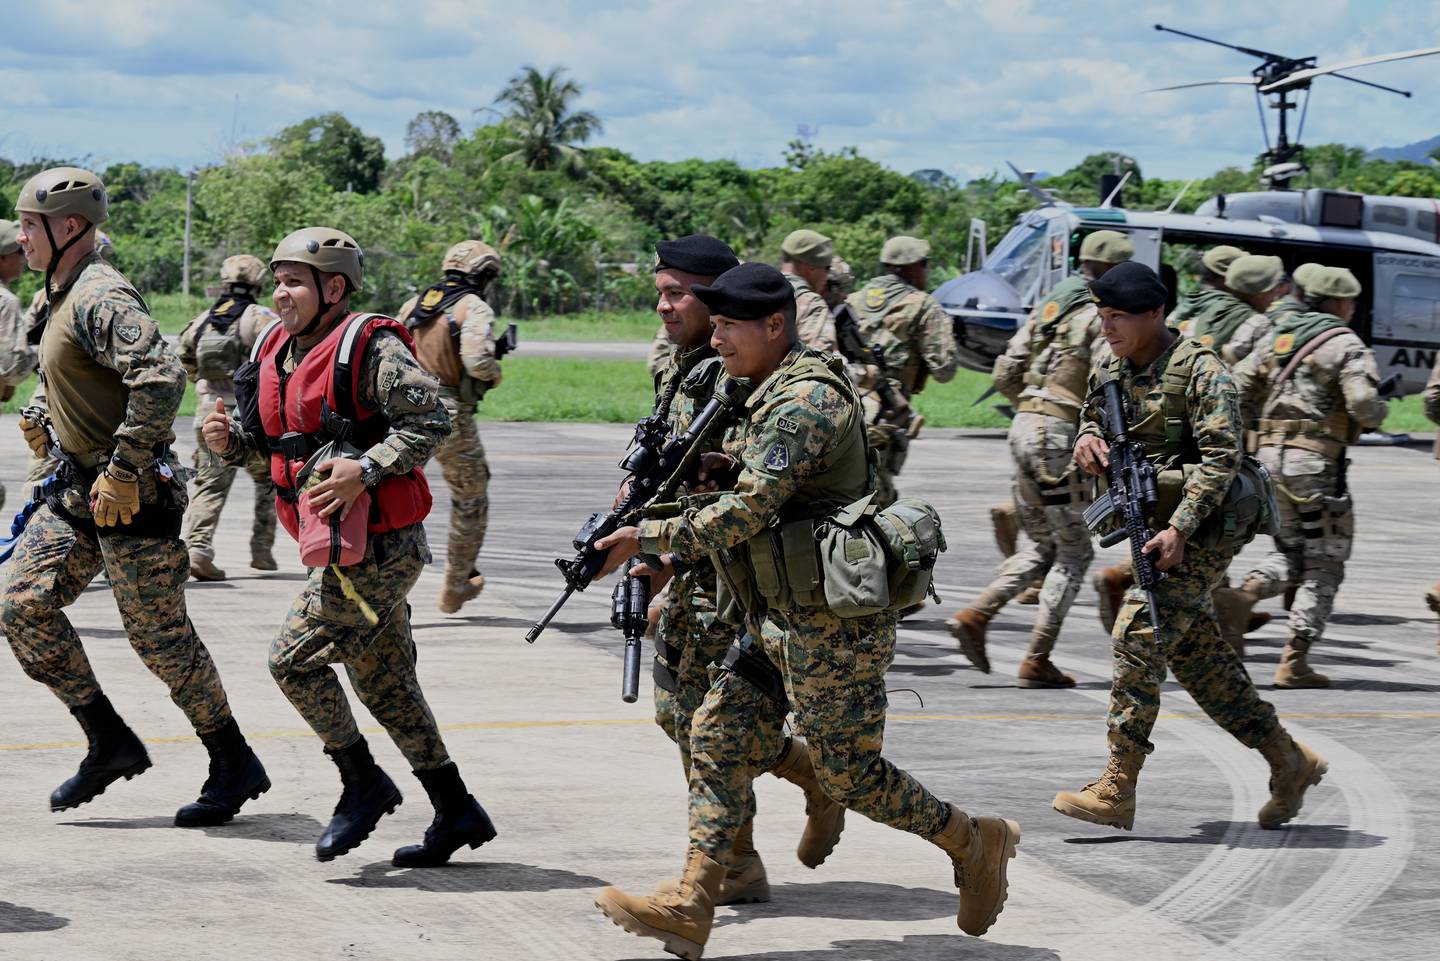 El gobierno panameño desplegó una operación de seguridad para combatir las bandas criminales transnacionales de tráfico de migrantes que operan en el Darién.